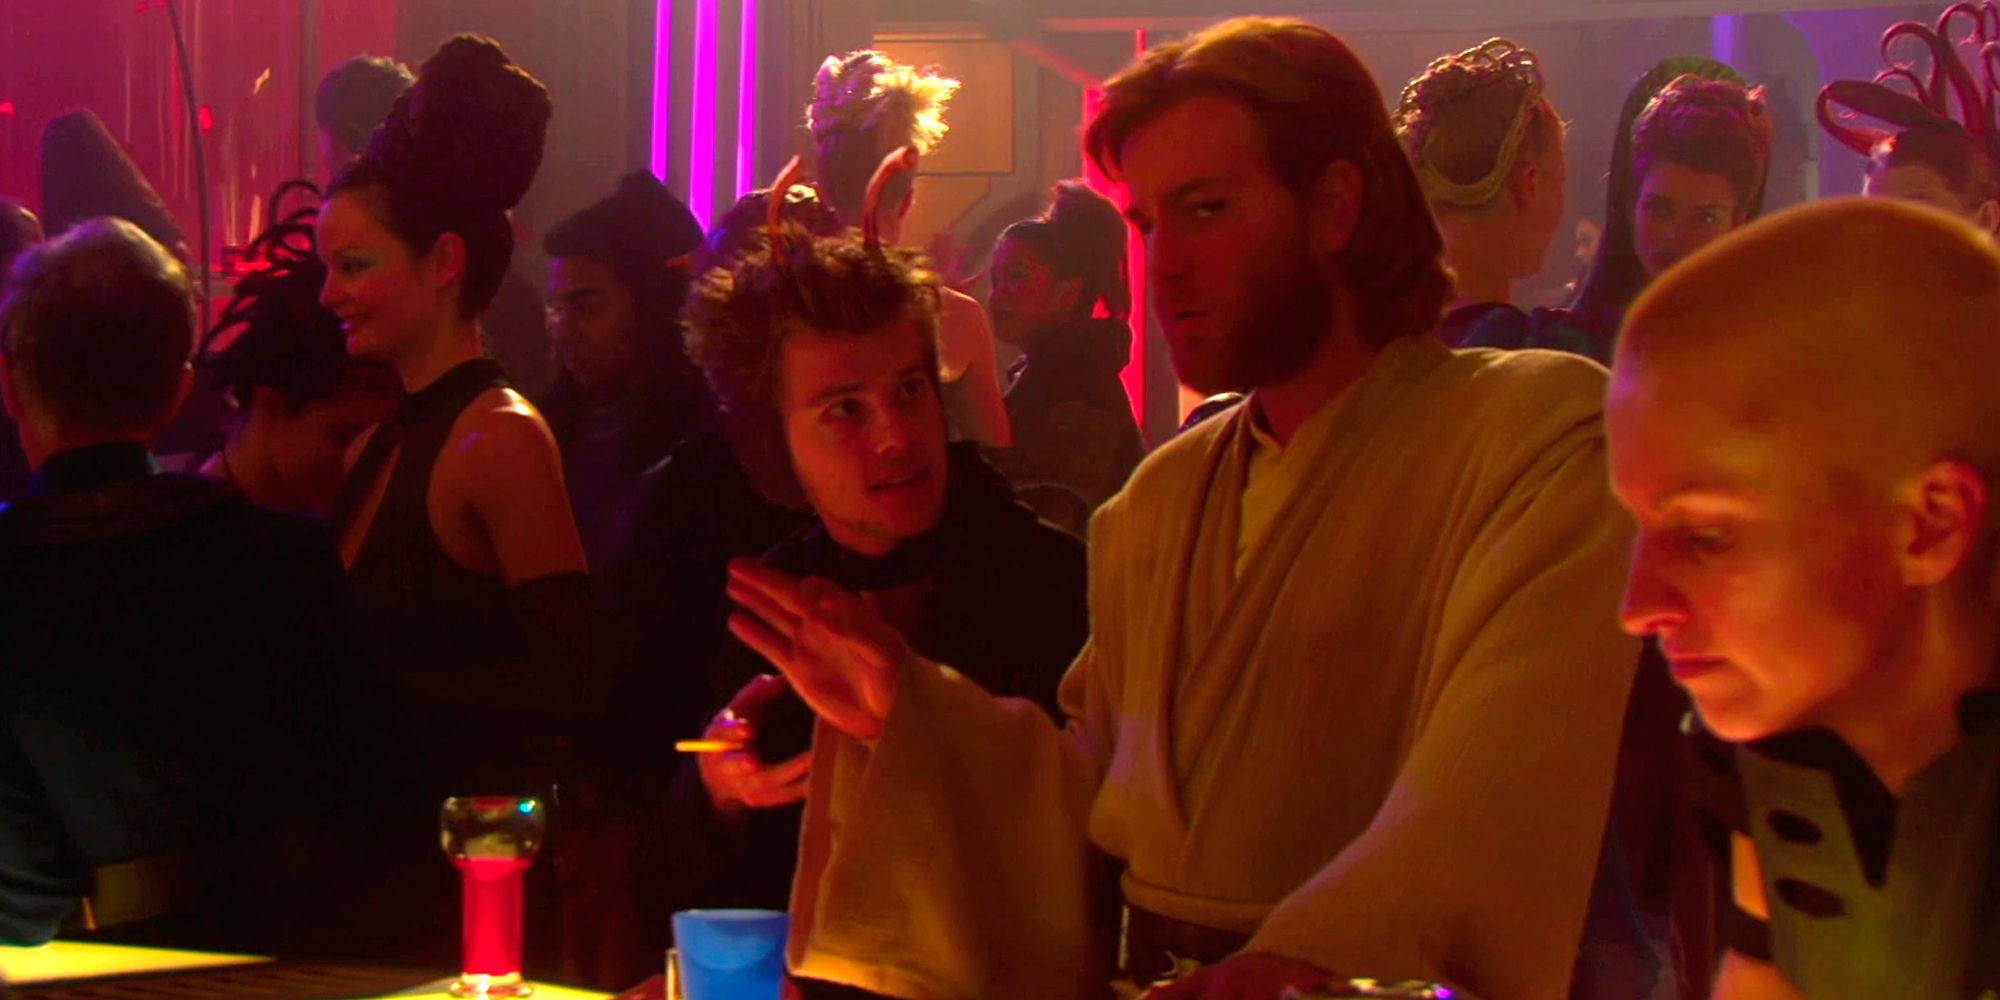 Ewan McGregor as Obi Wan Kenobi in Attack of the Clones